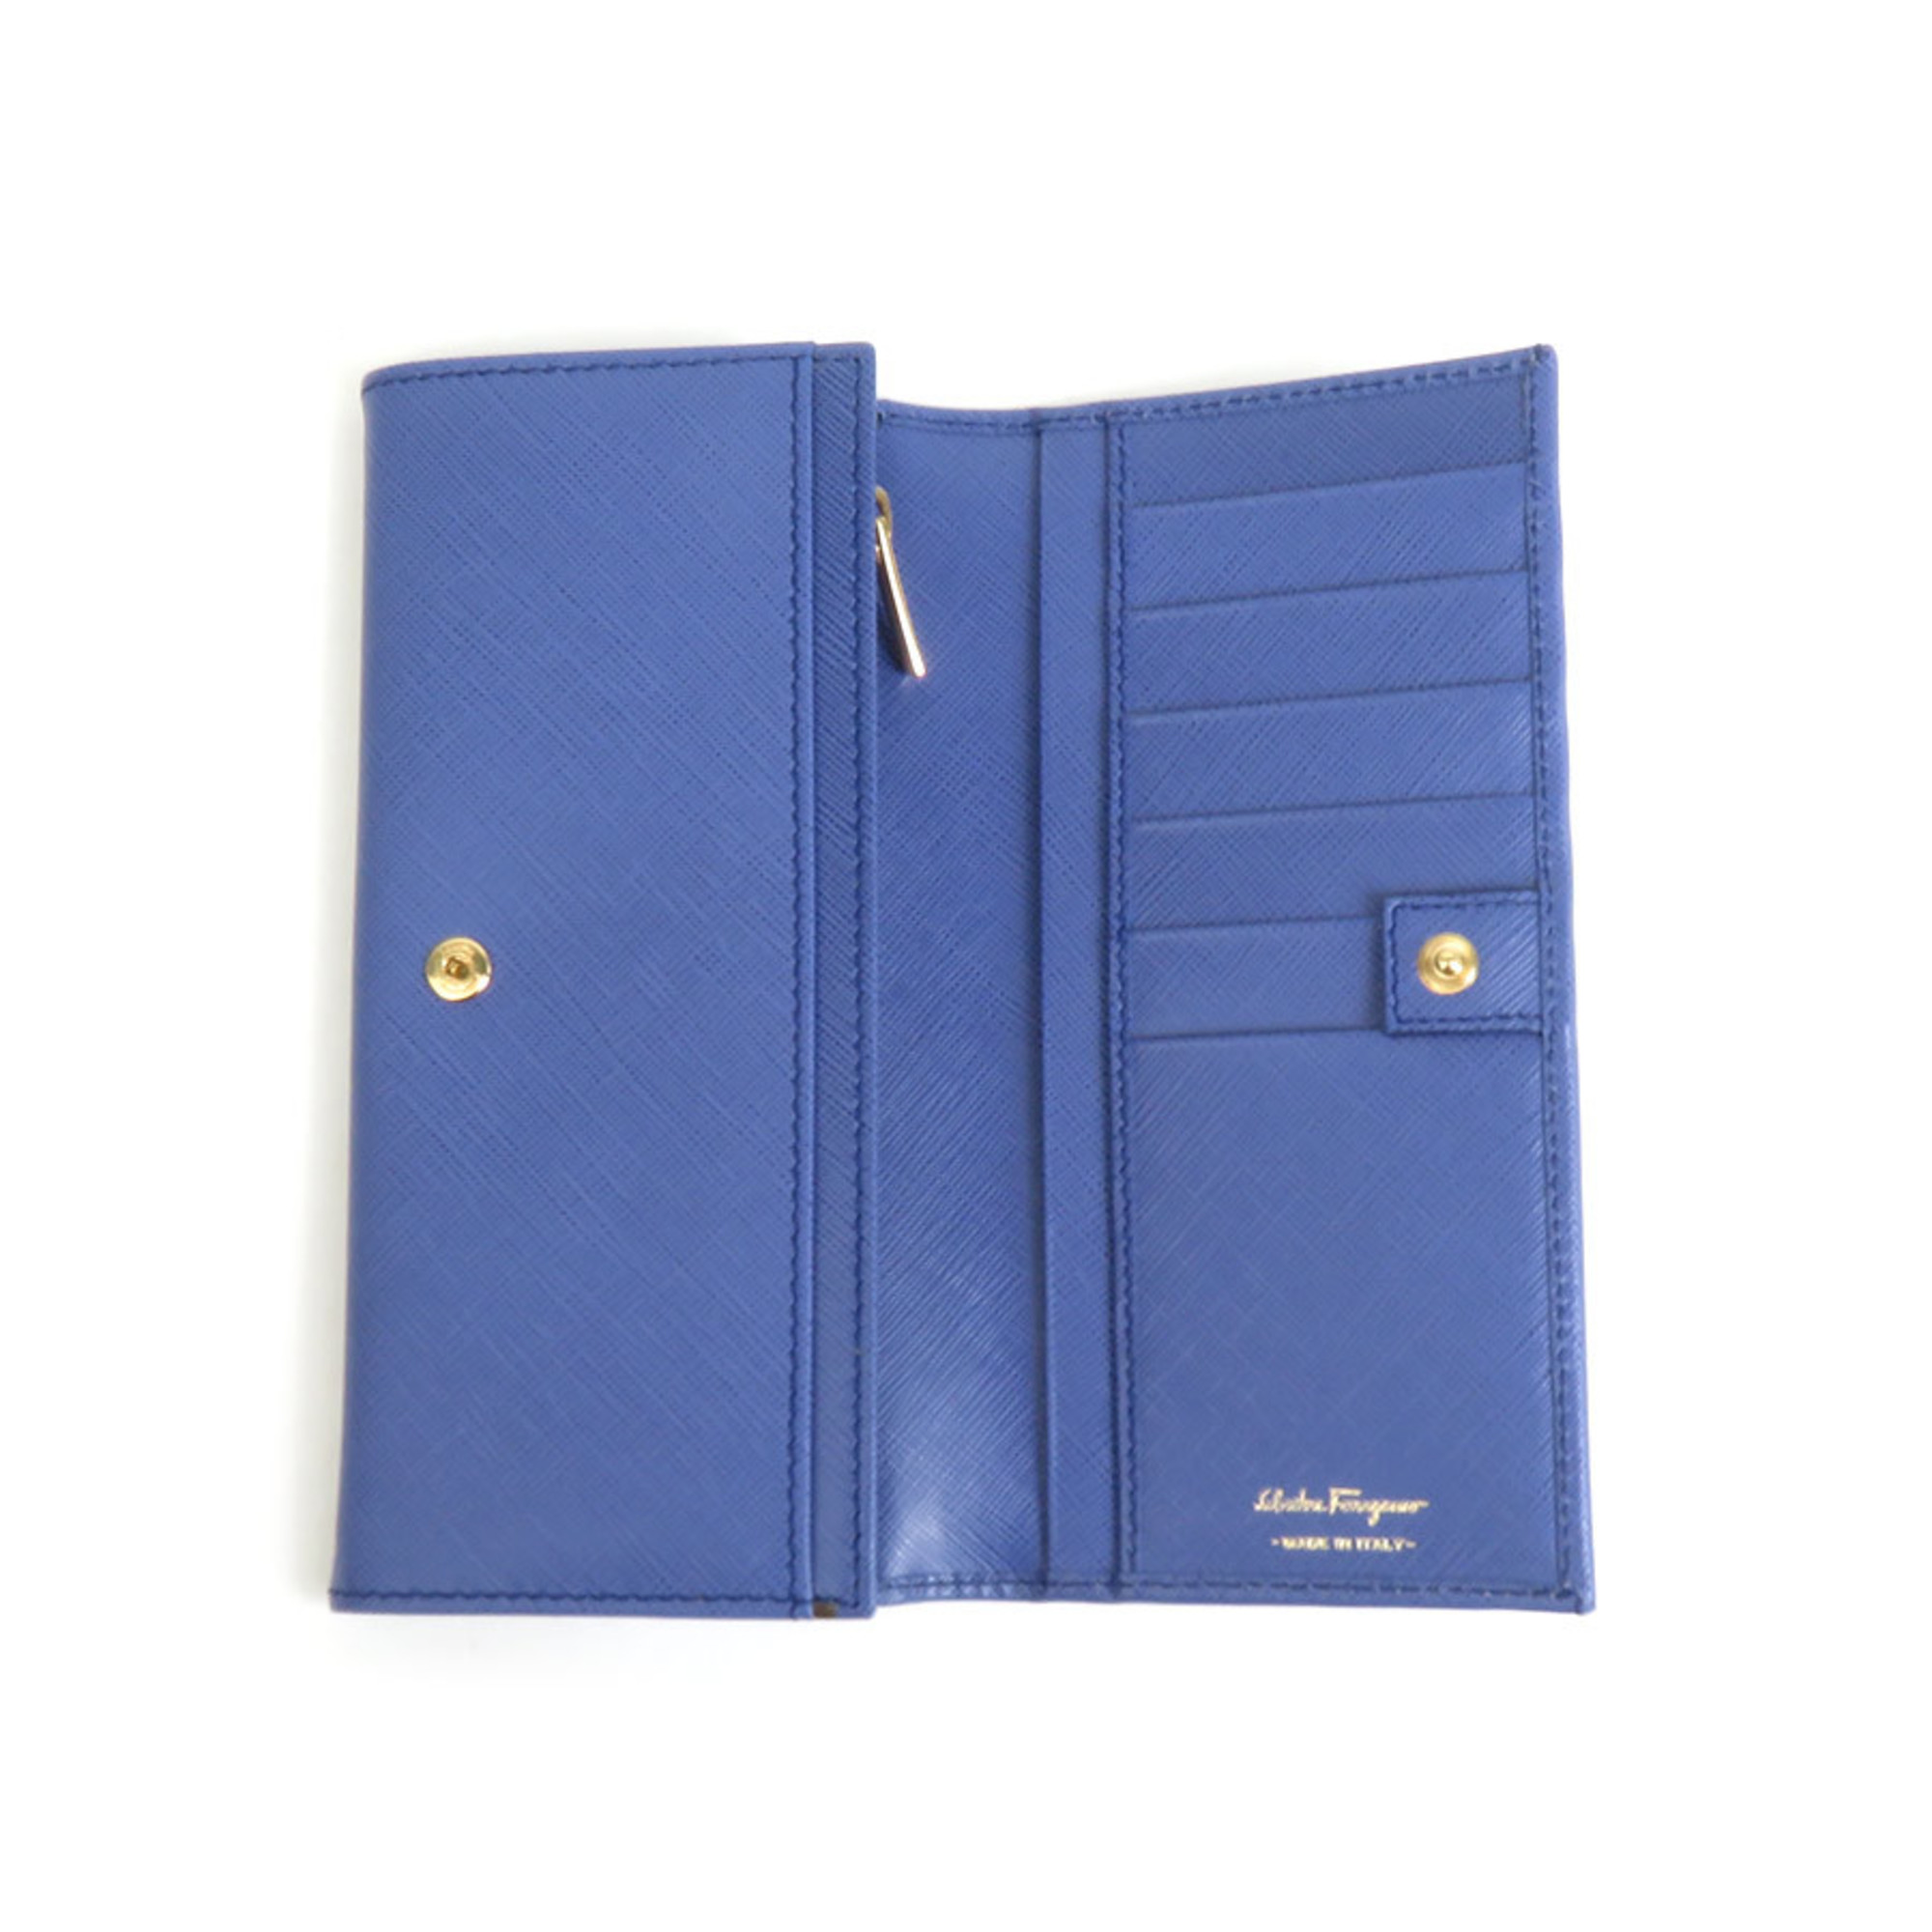 Salvatore Ferragamo Gancini Leather Bi-Fold Long Wallet Blue Women's a0315